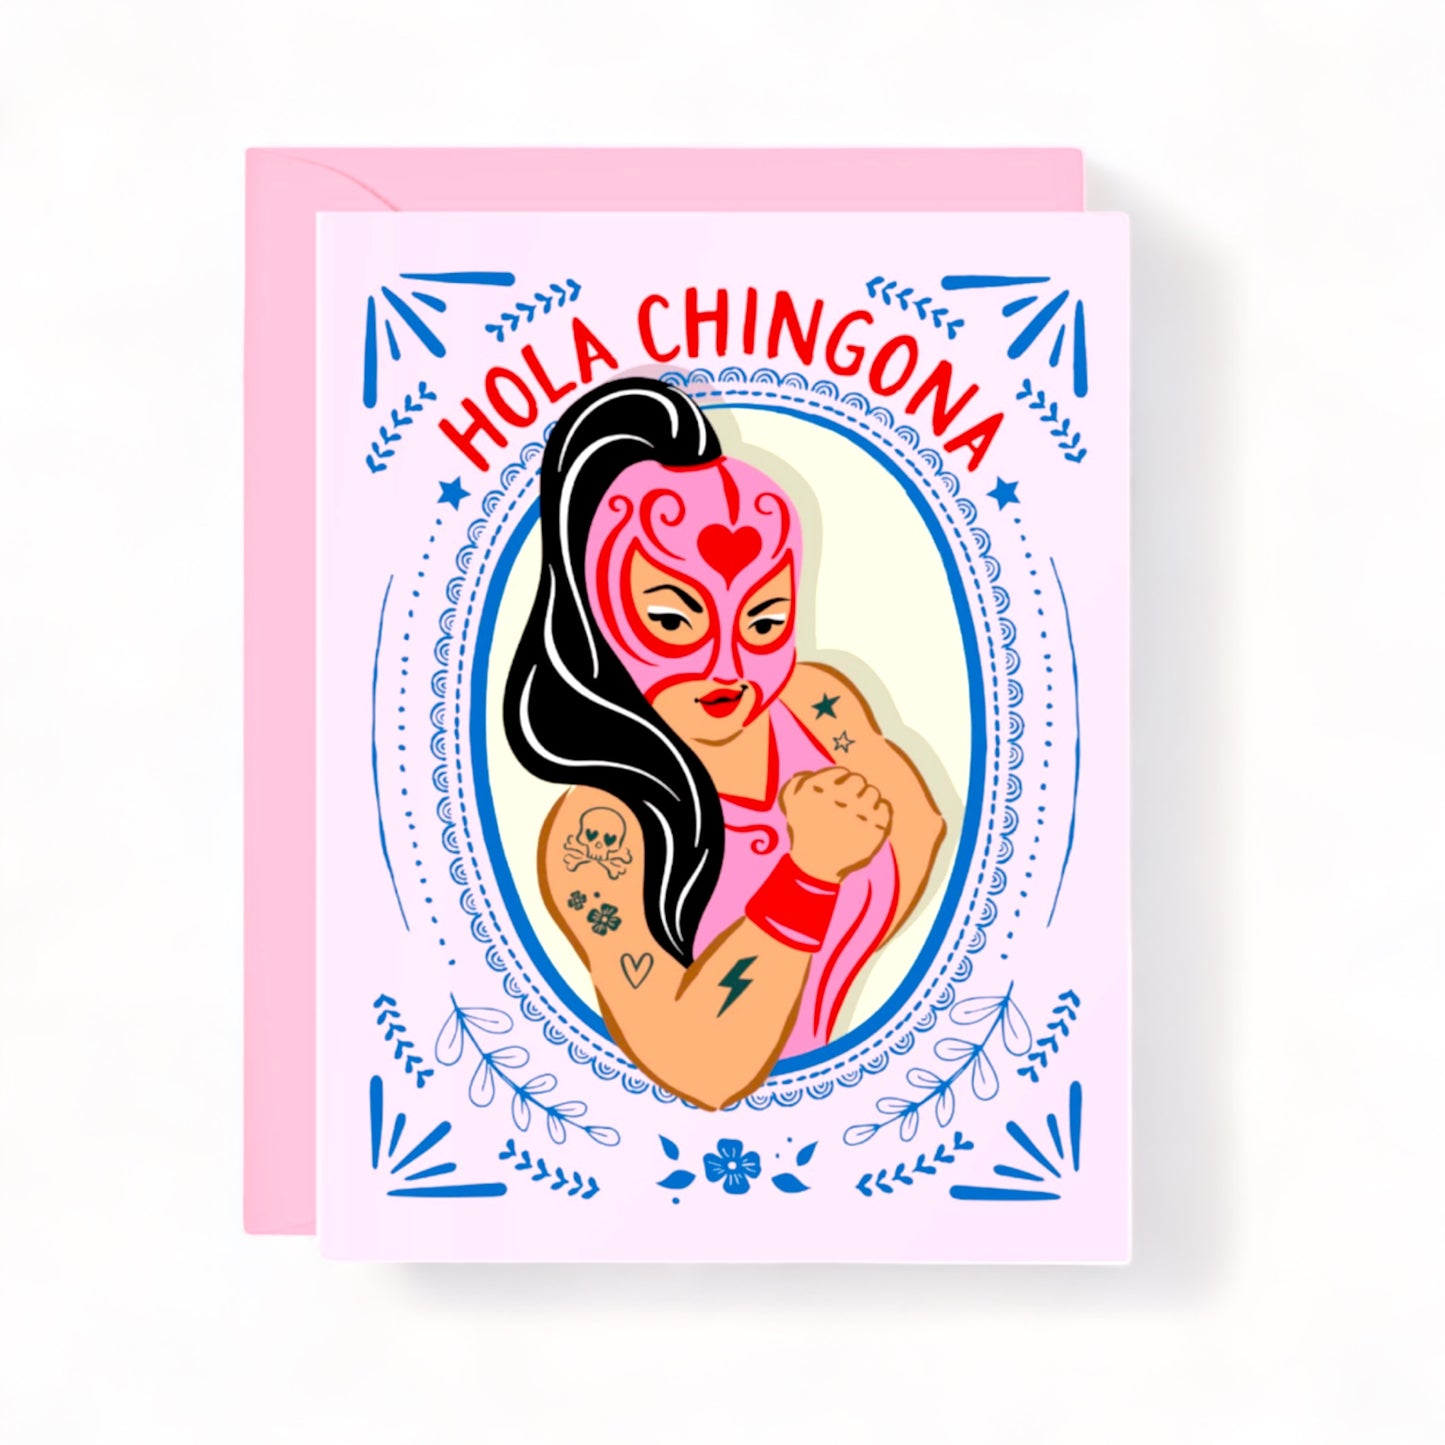 Hola Chingona! - Greeting Card